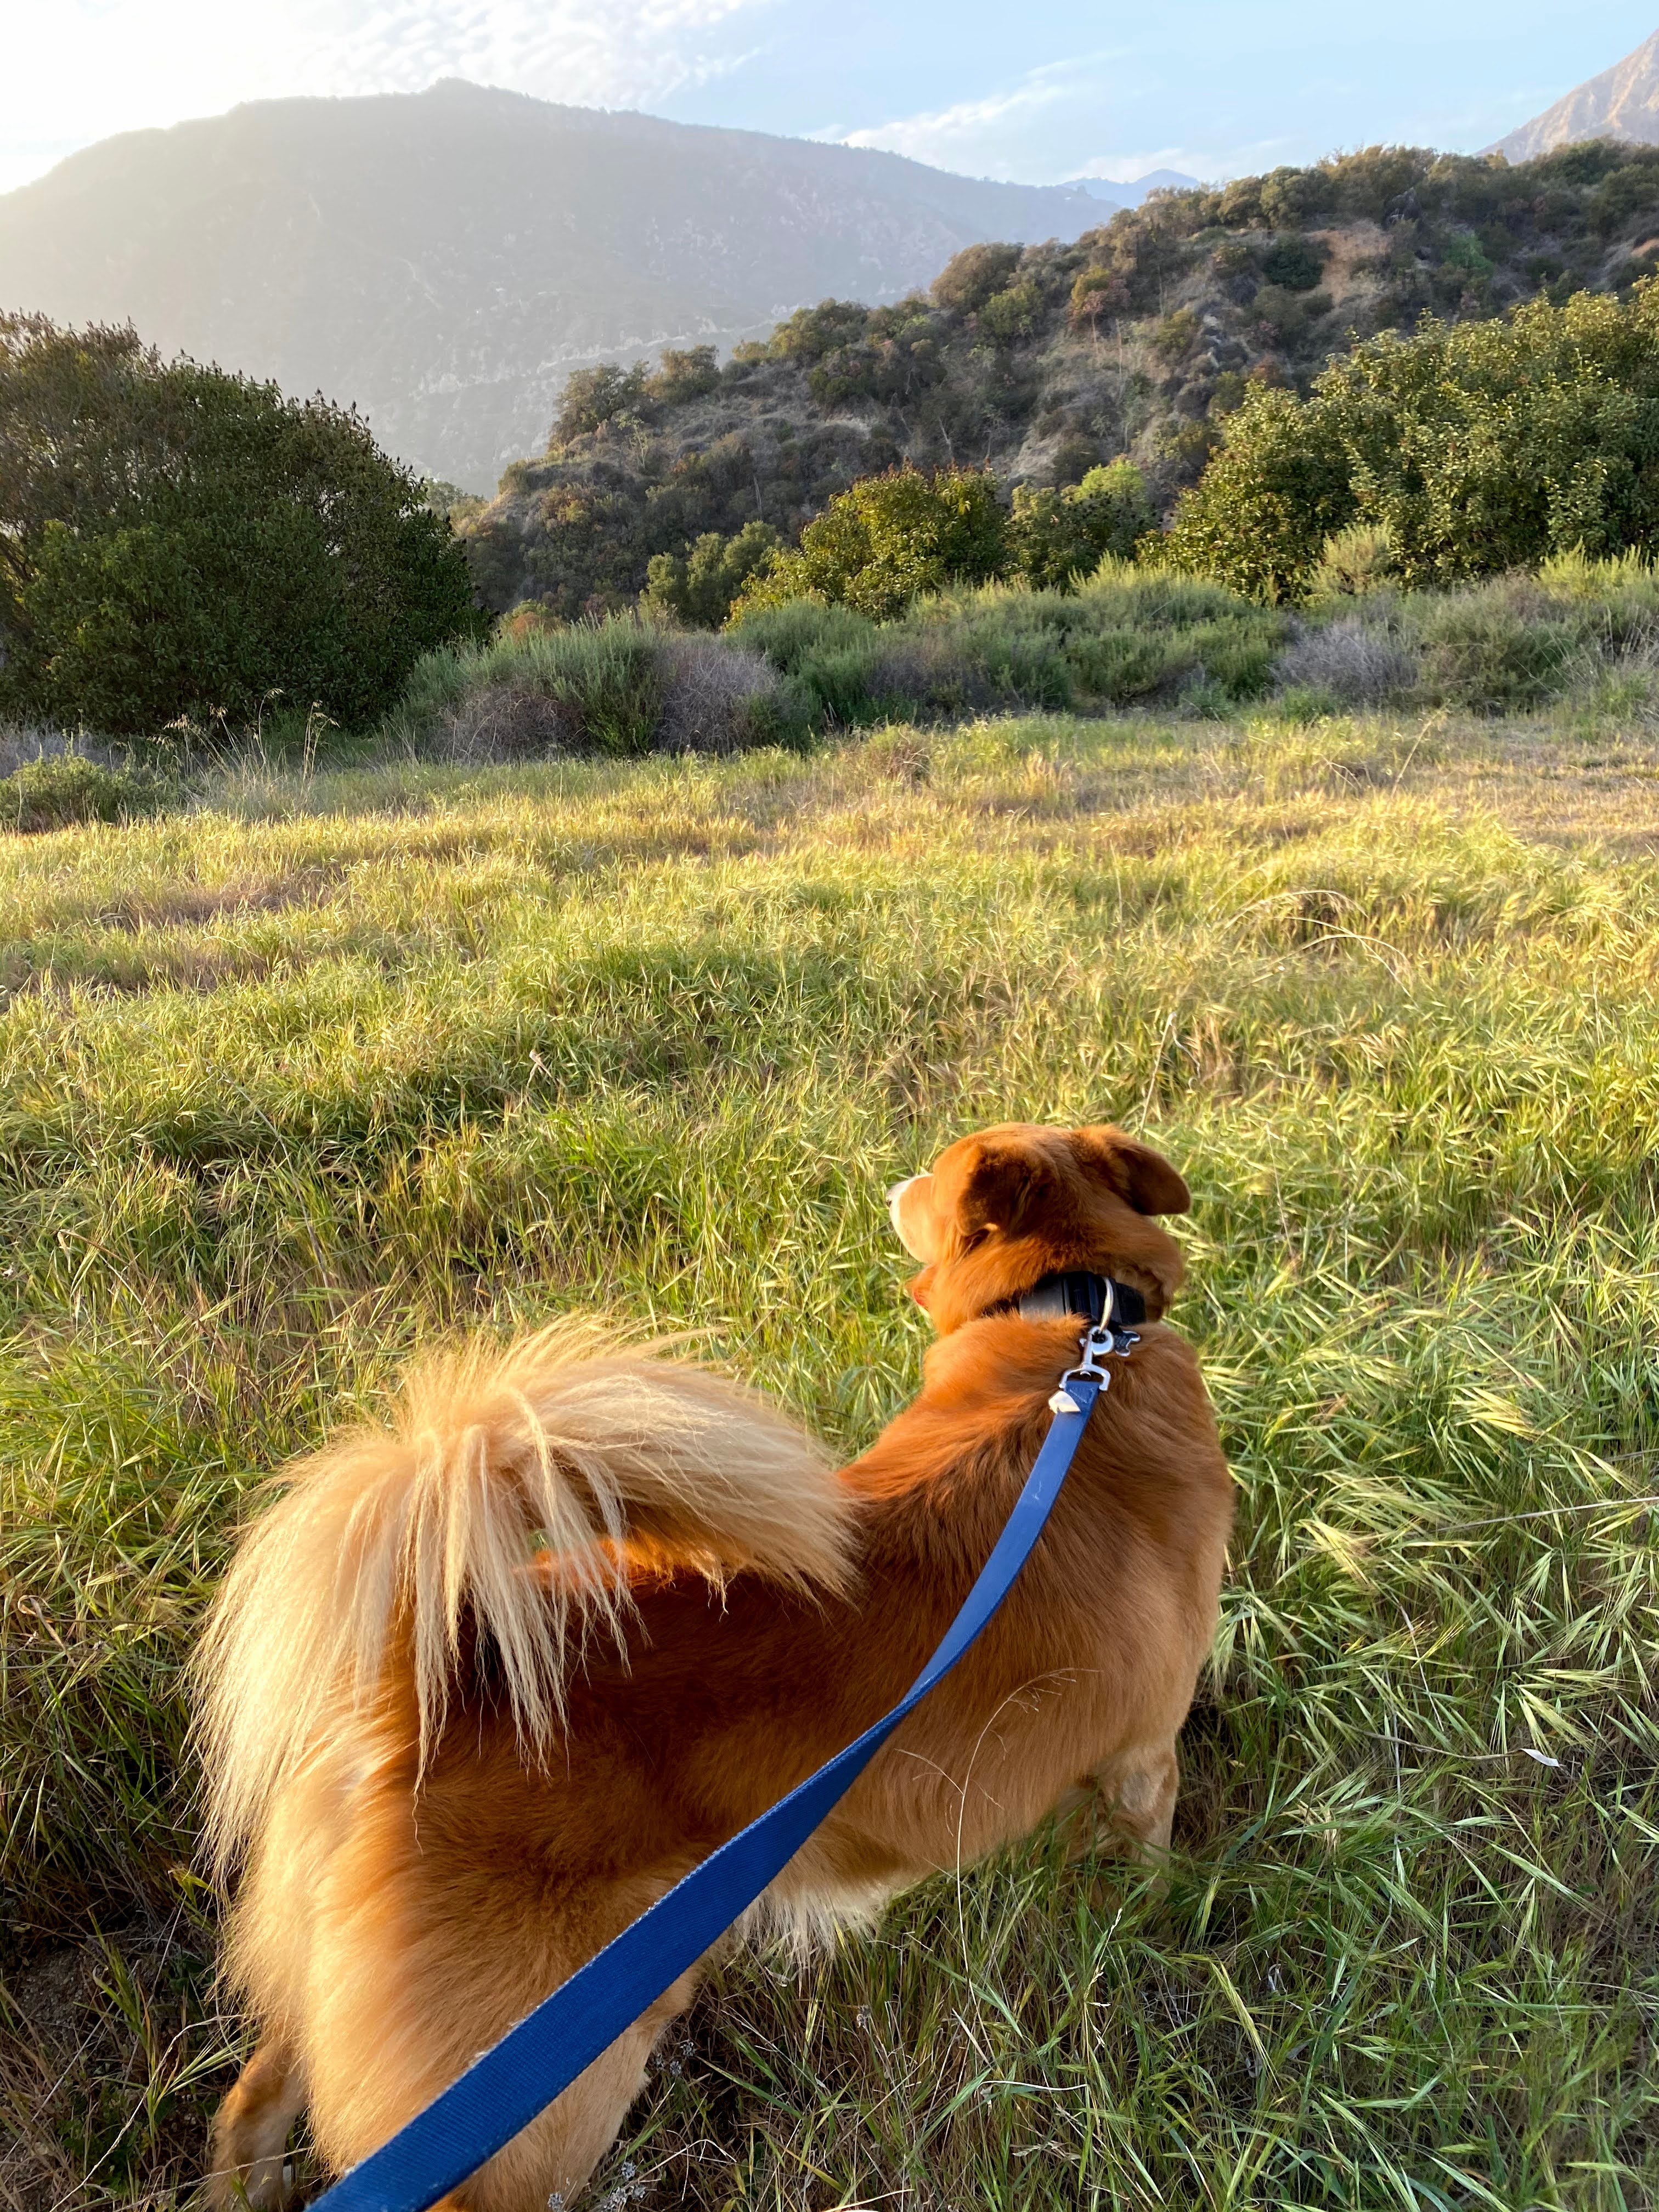 Boba on a hike.